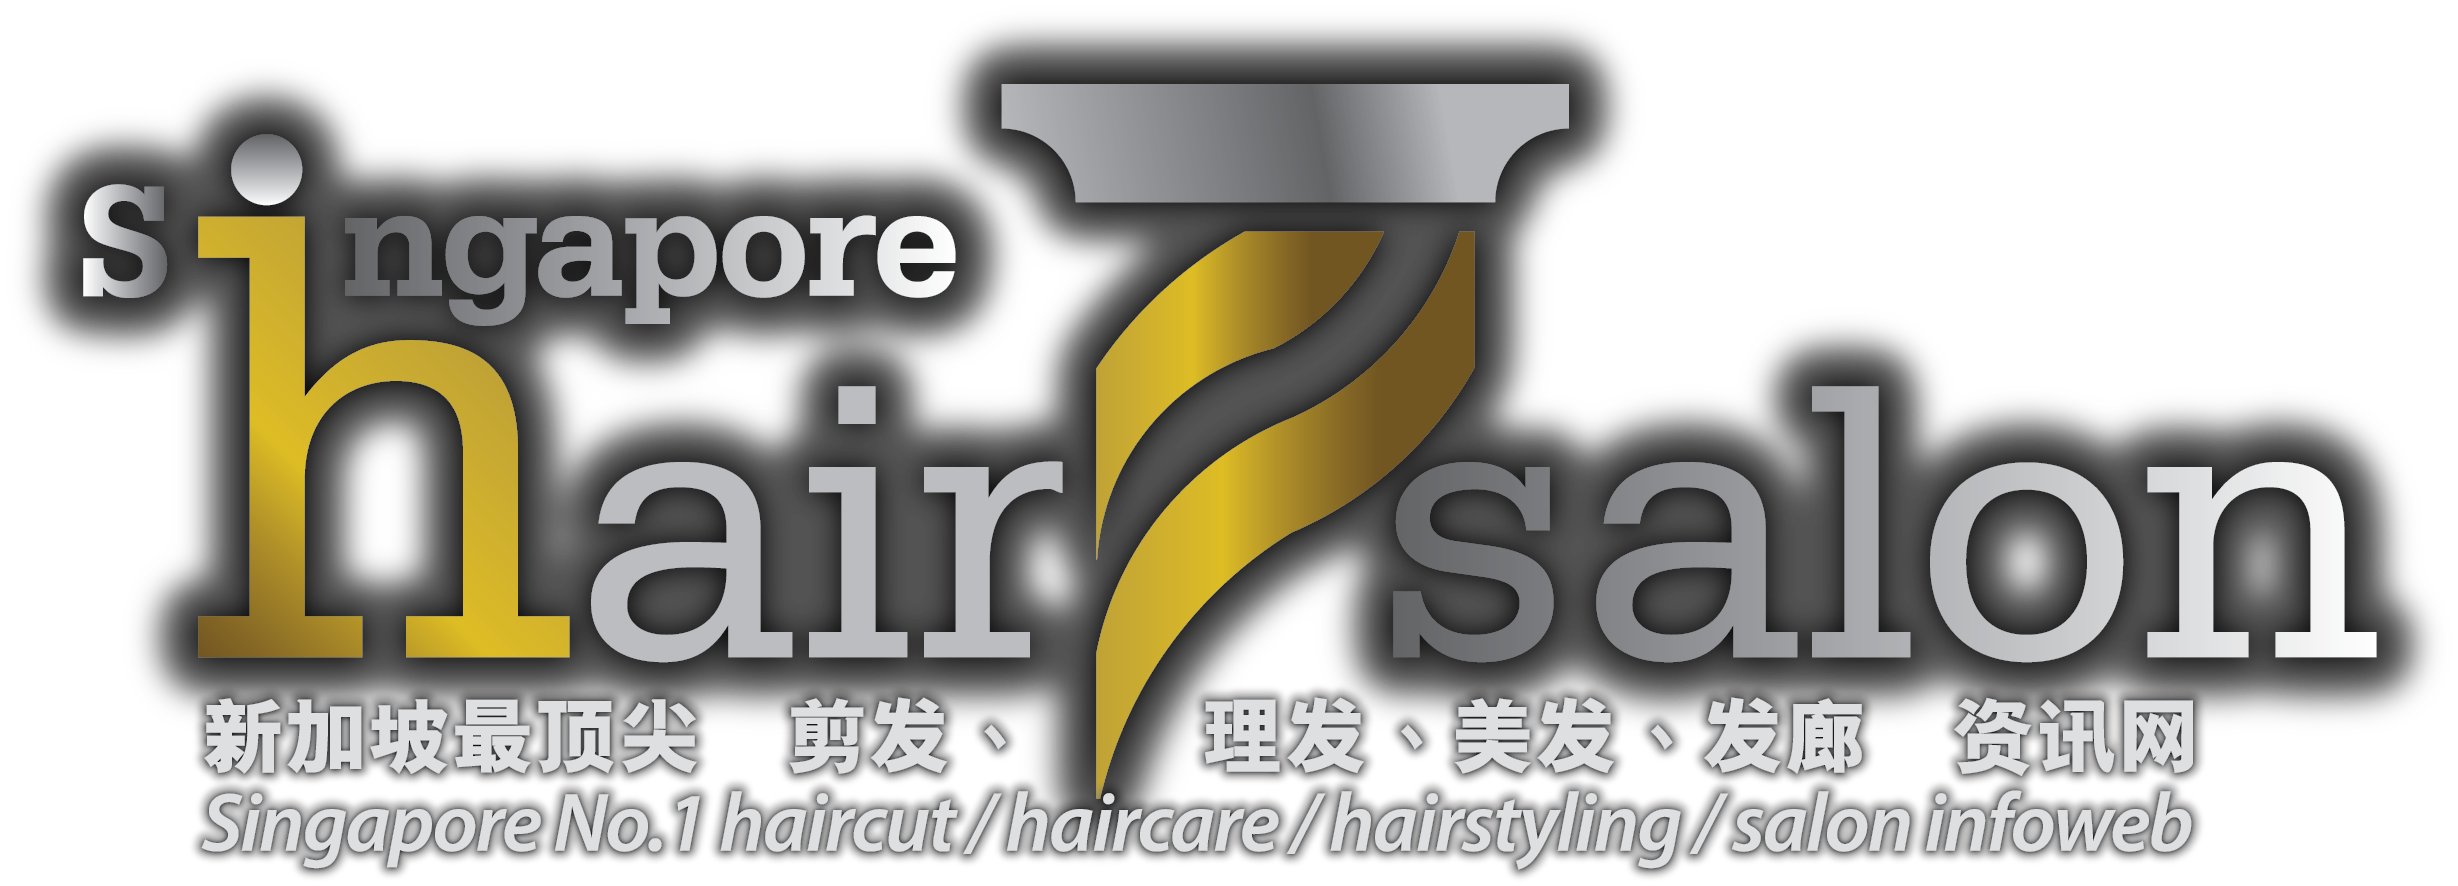 Singapore Hair Salon